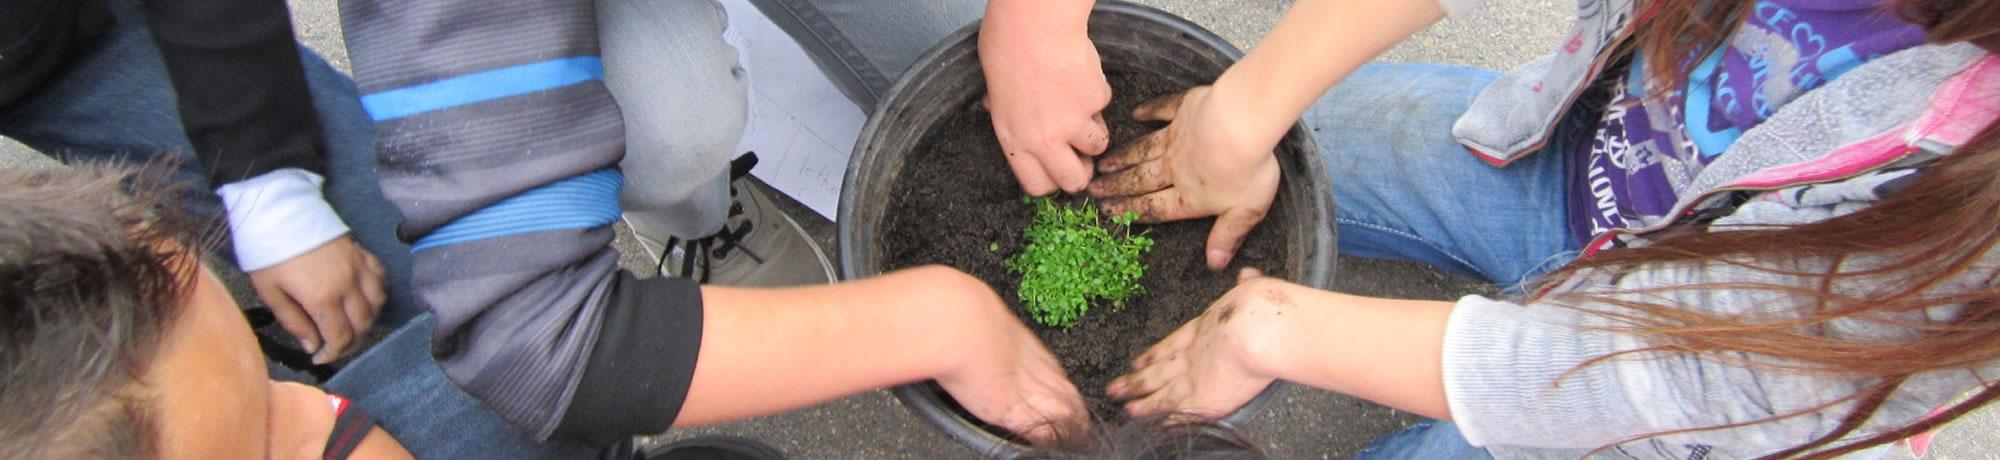 Children planting a plant.